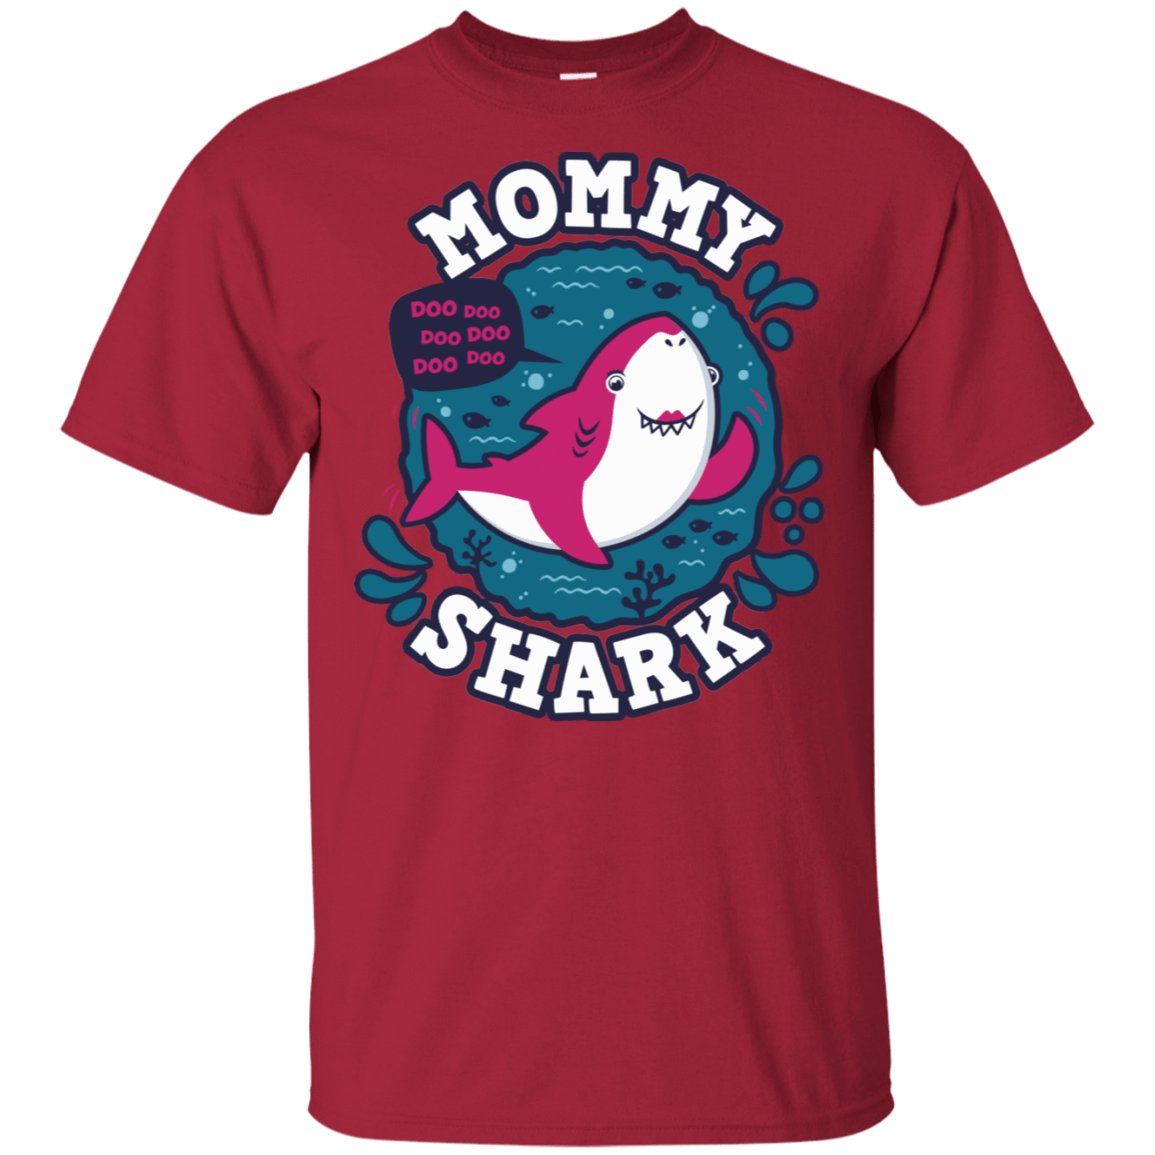 T-Shirts Cardinal / S Shark Family trazo - Mommy T-Shirt